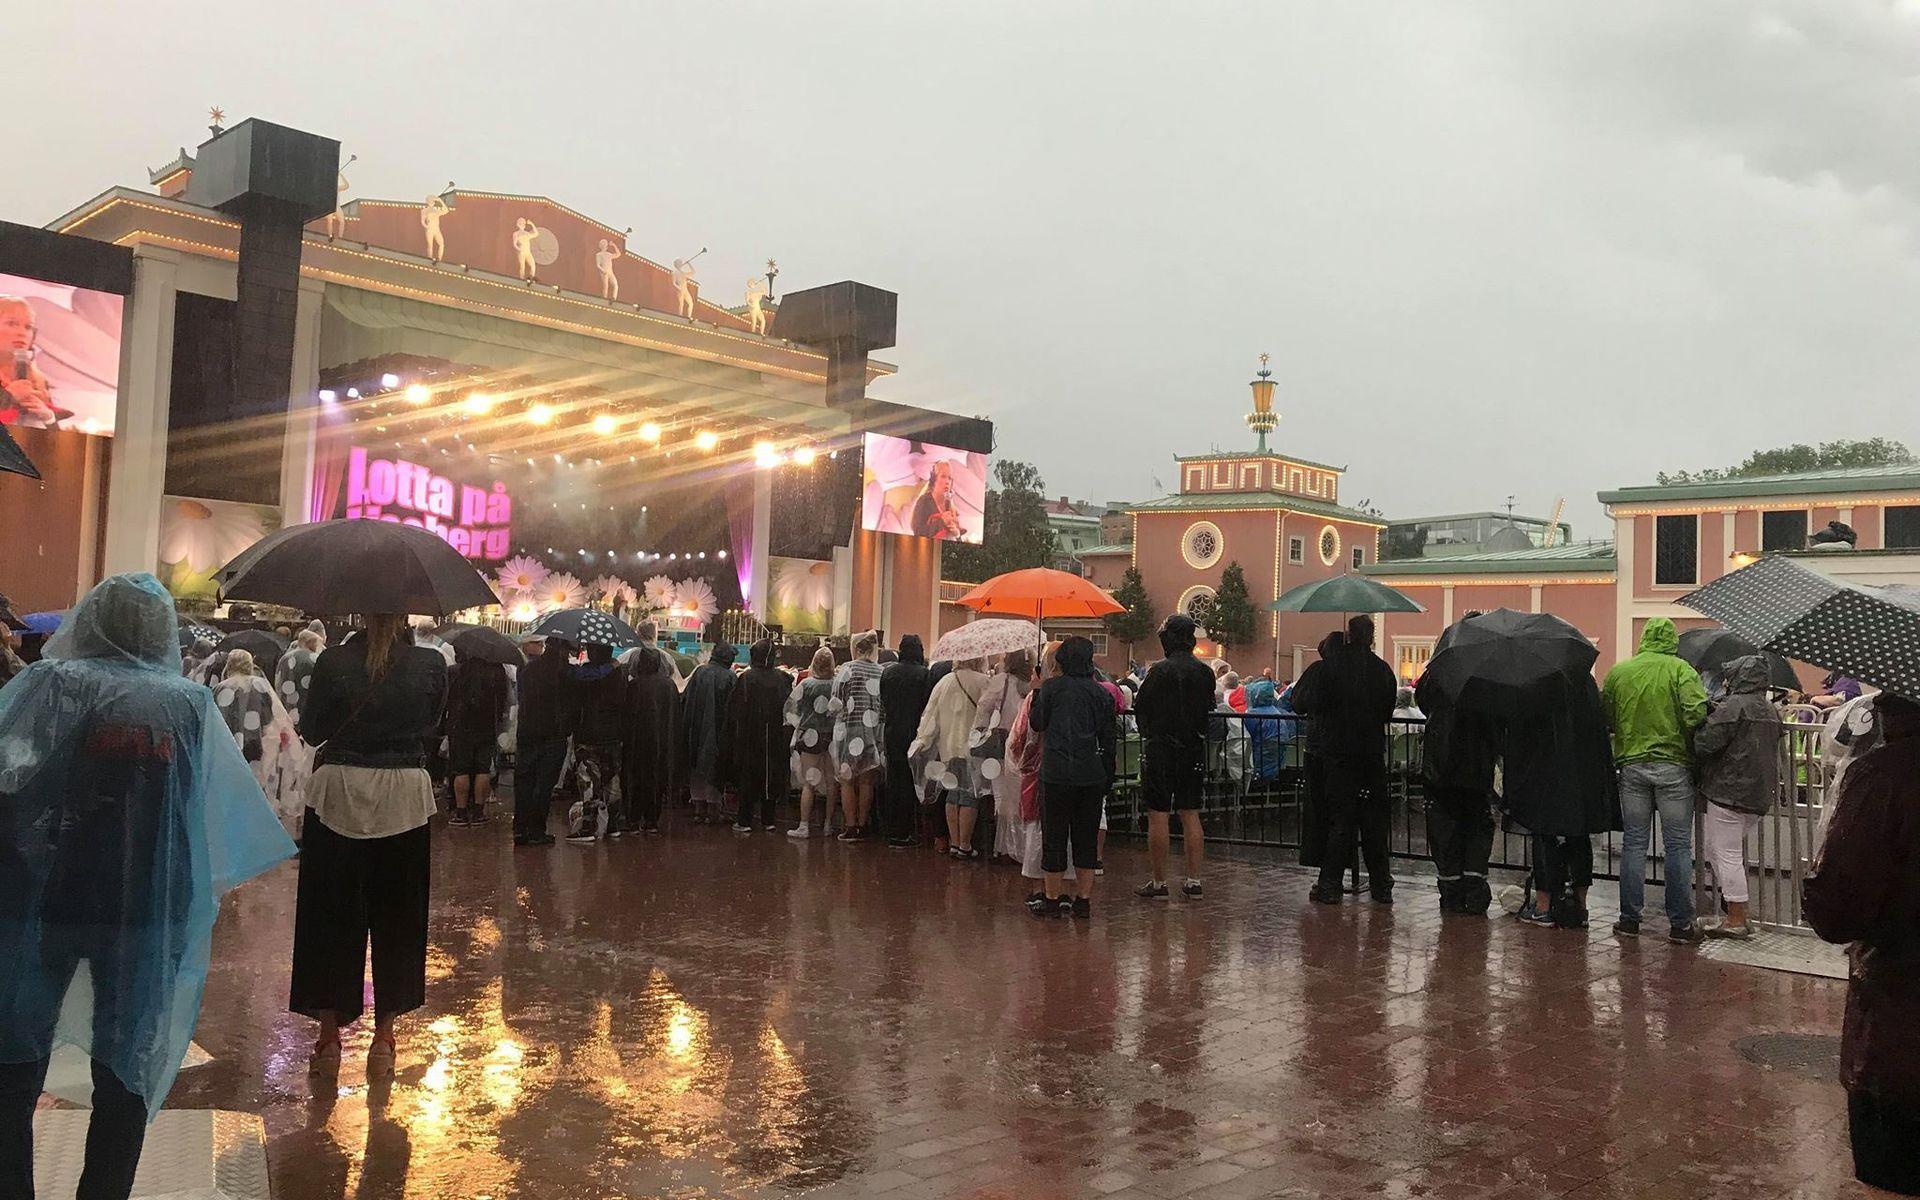 Många tappra musikälskare står framför scenen på Liseberg, trots regnet.